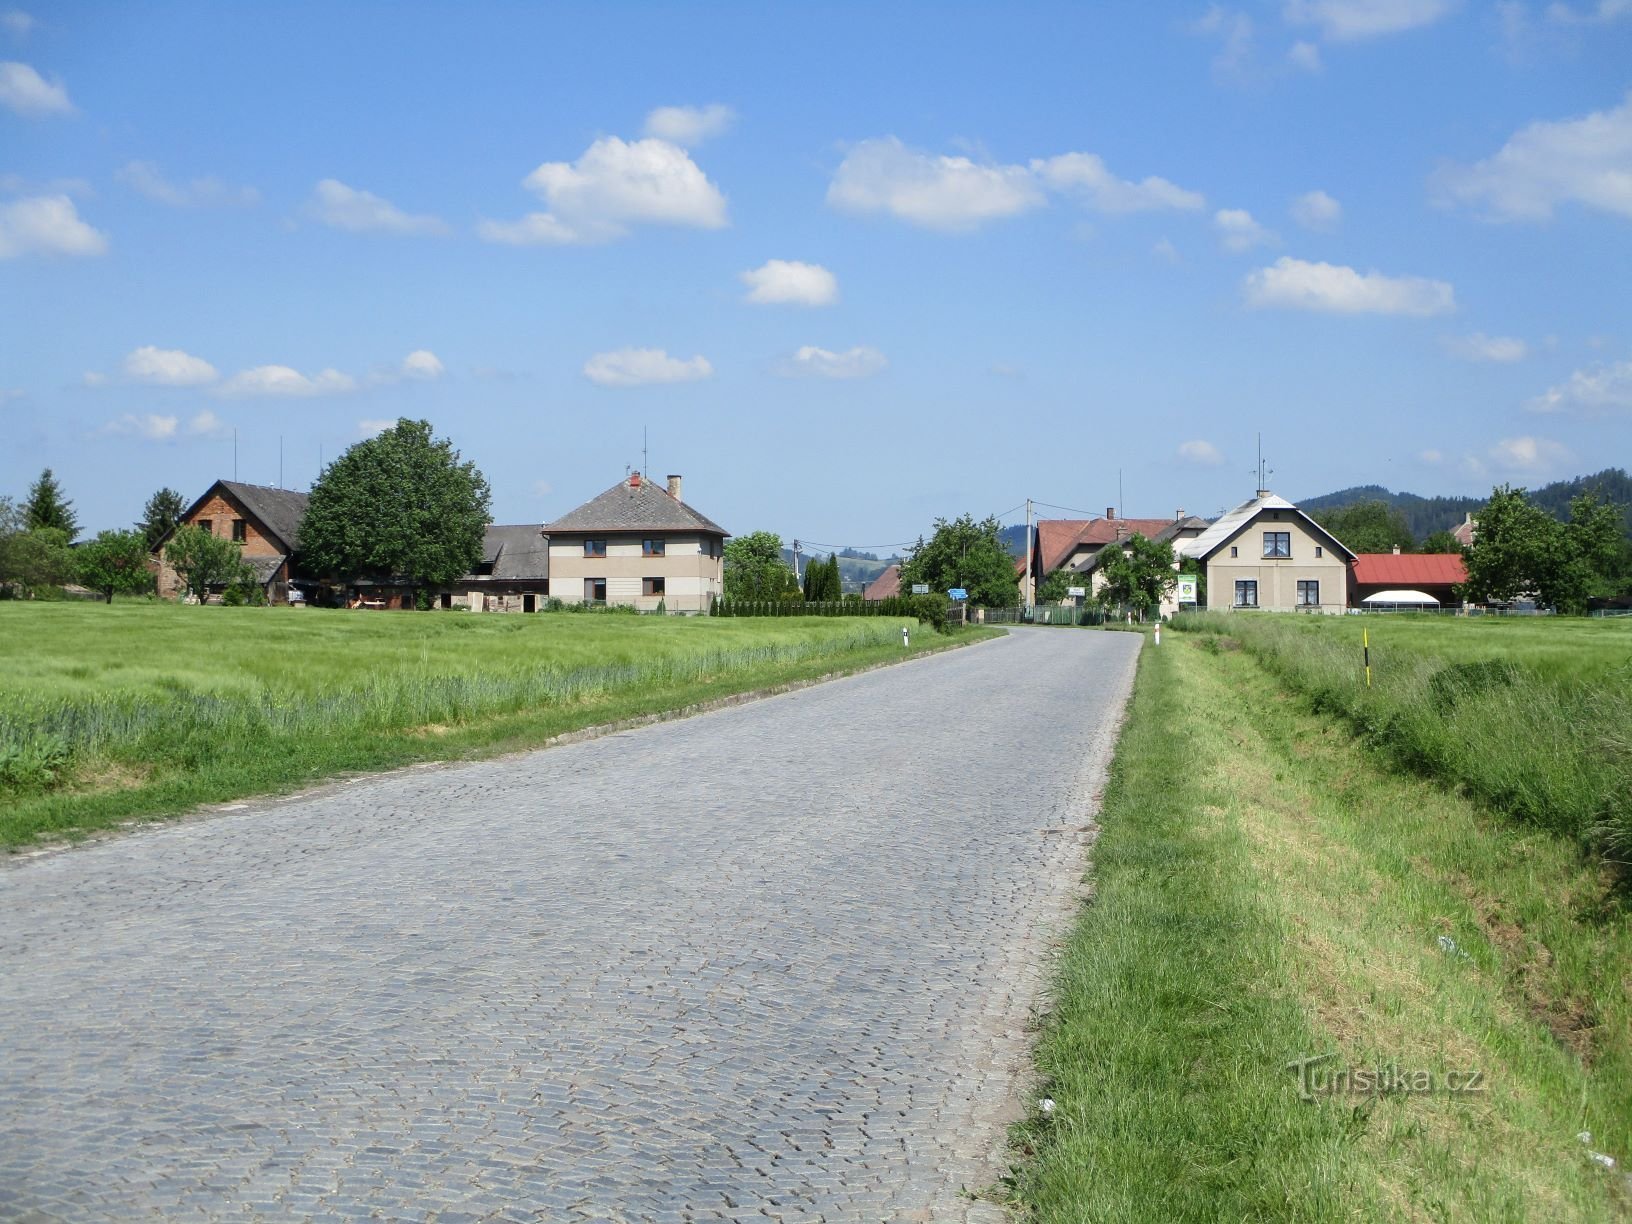 Wejście do Velké Svatoňovice od Zálesí (5.6.2019)